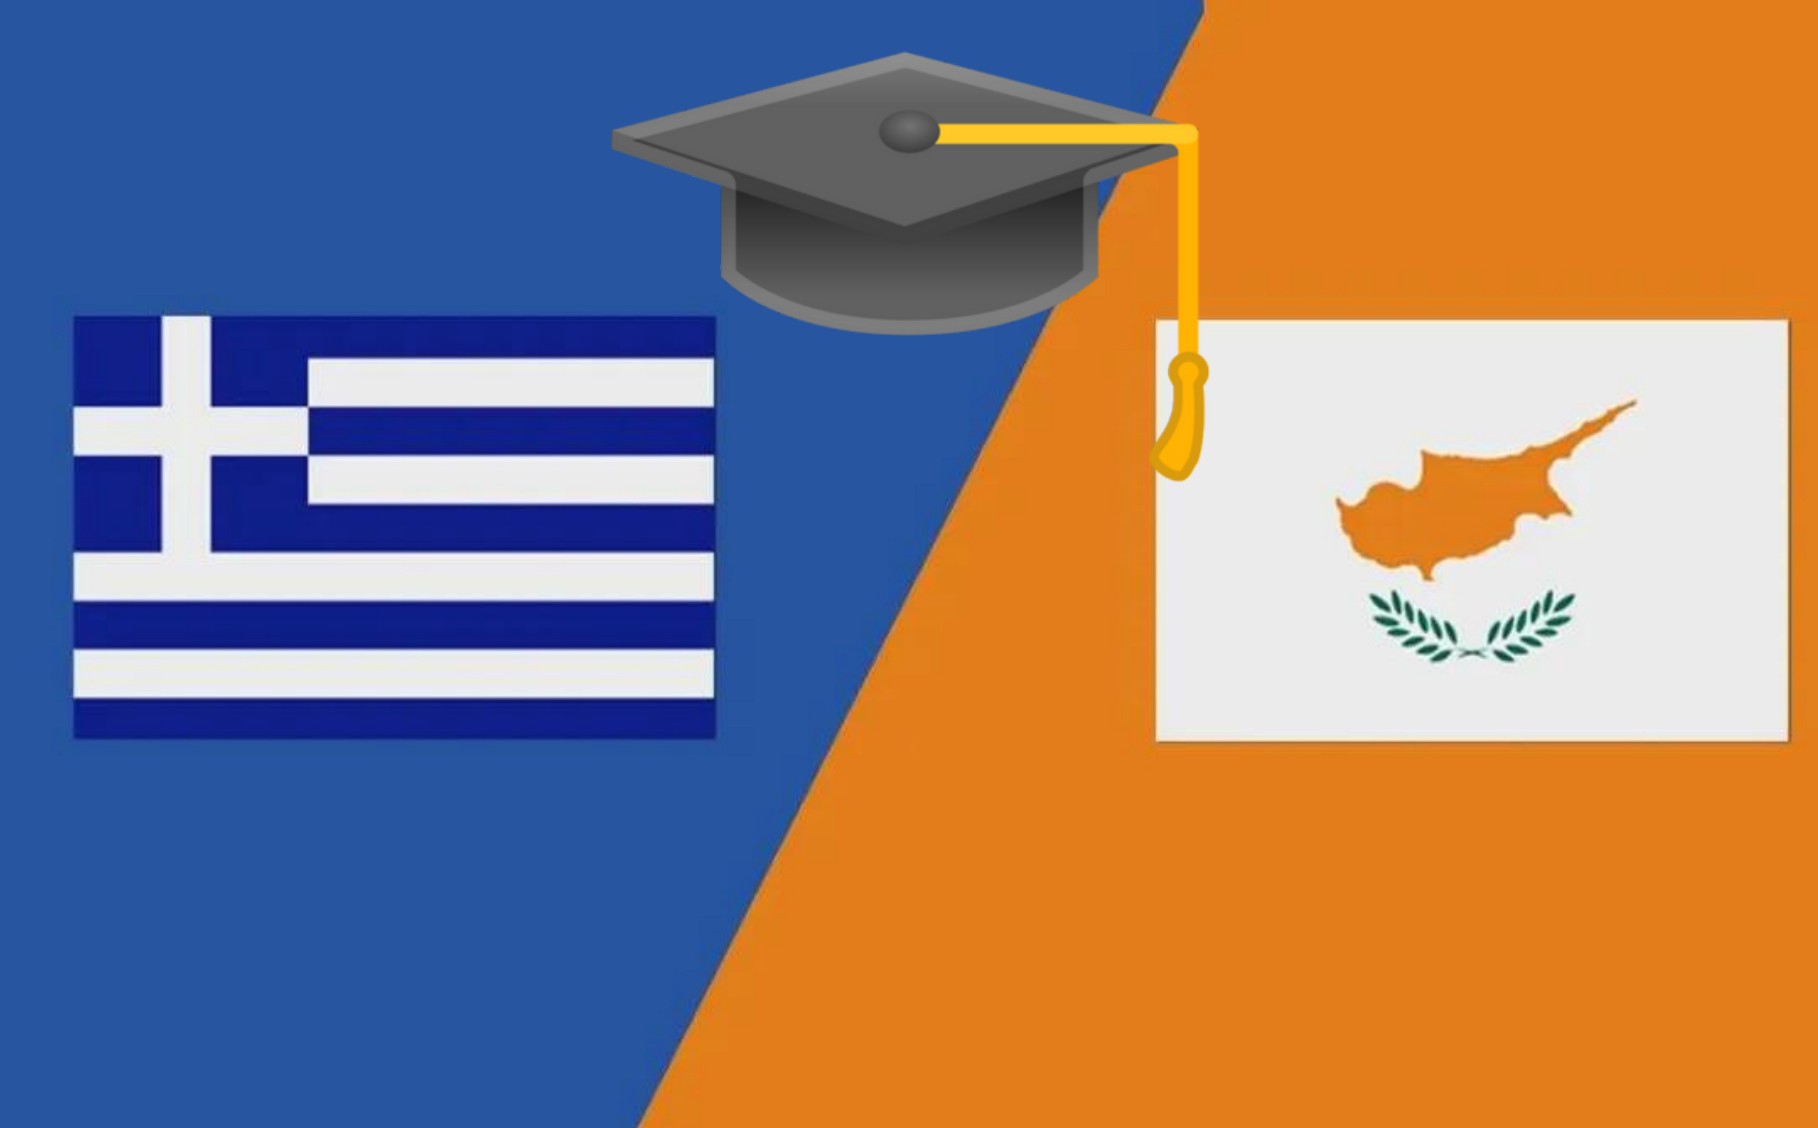  Ελλάδα-Κύπρος: Αμοιβαία ακαδημαϊκή αναγνώριση πανεπιστημιακών τίτλων σπουδών